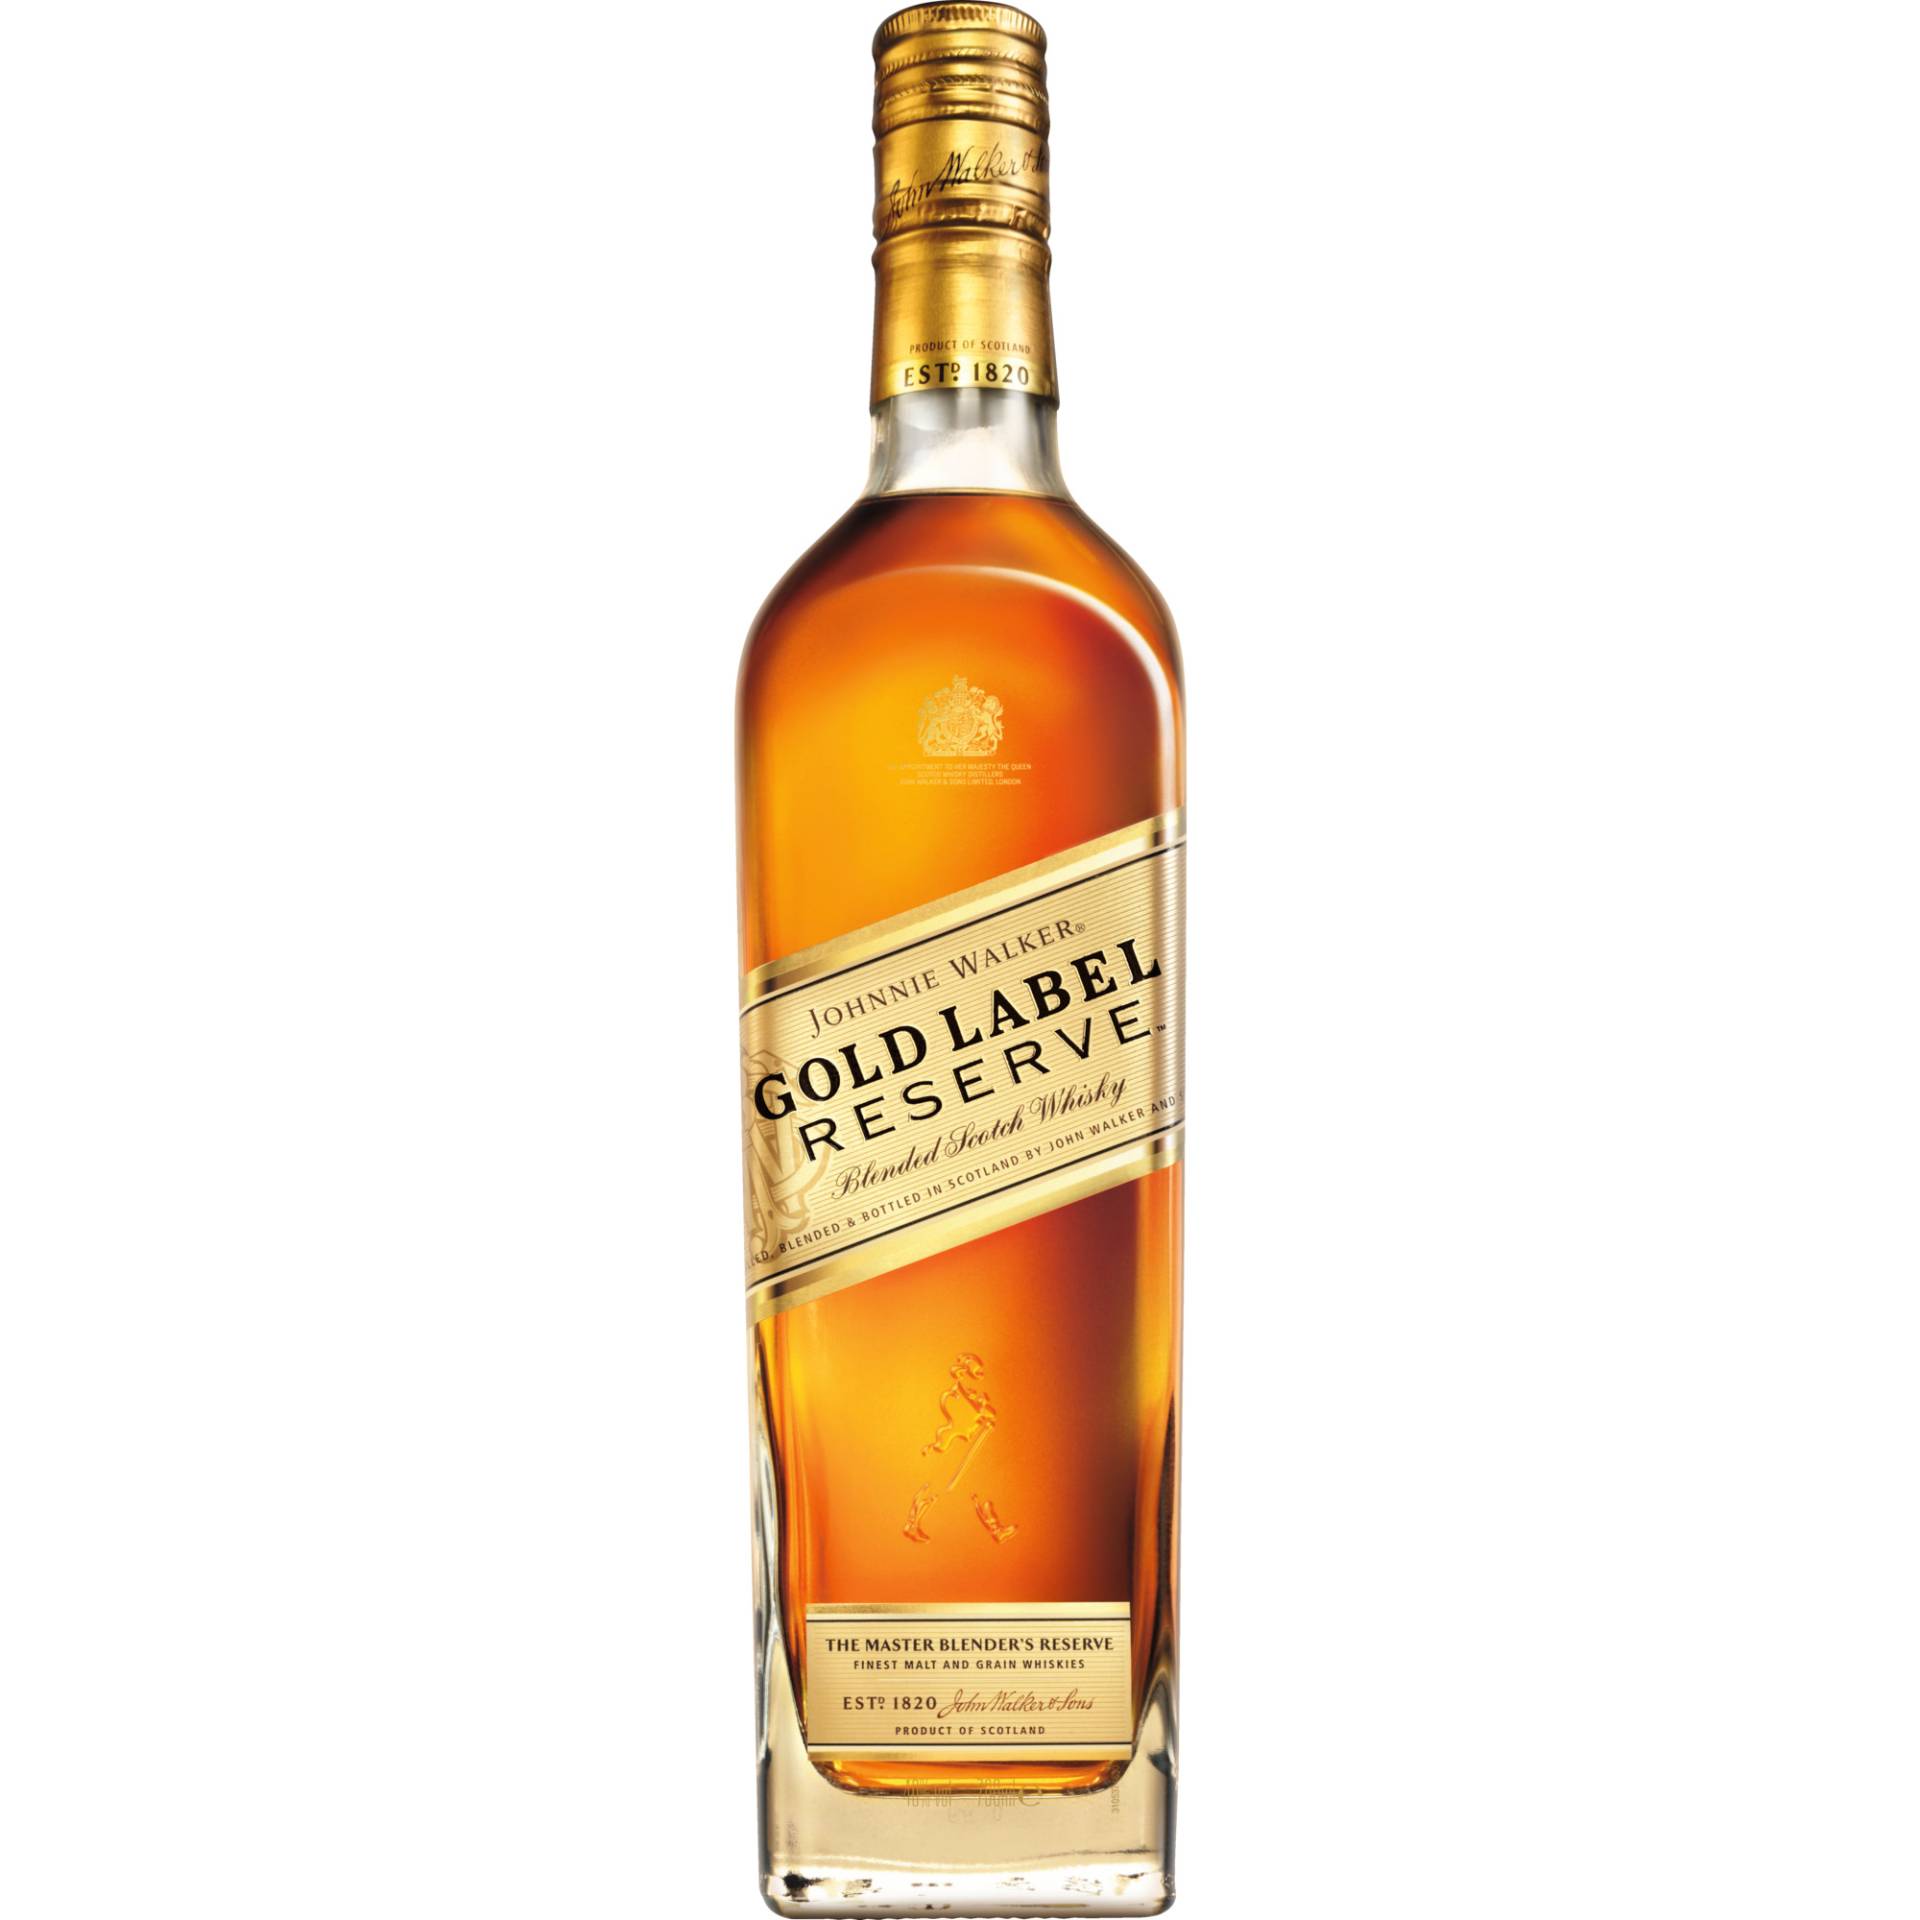 Johnnie Walker Gold Label Reserve, Blended Scotch Whisky, 0,7 L, 40% Vol., Schottland, Spirituosen von Johnnie Walker & Sons, 5 Lochside Way, Edinburgh, EH12 9DT, Schottland